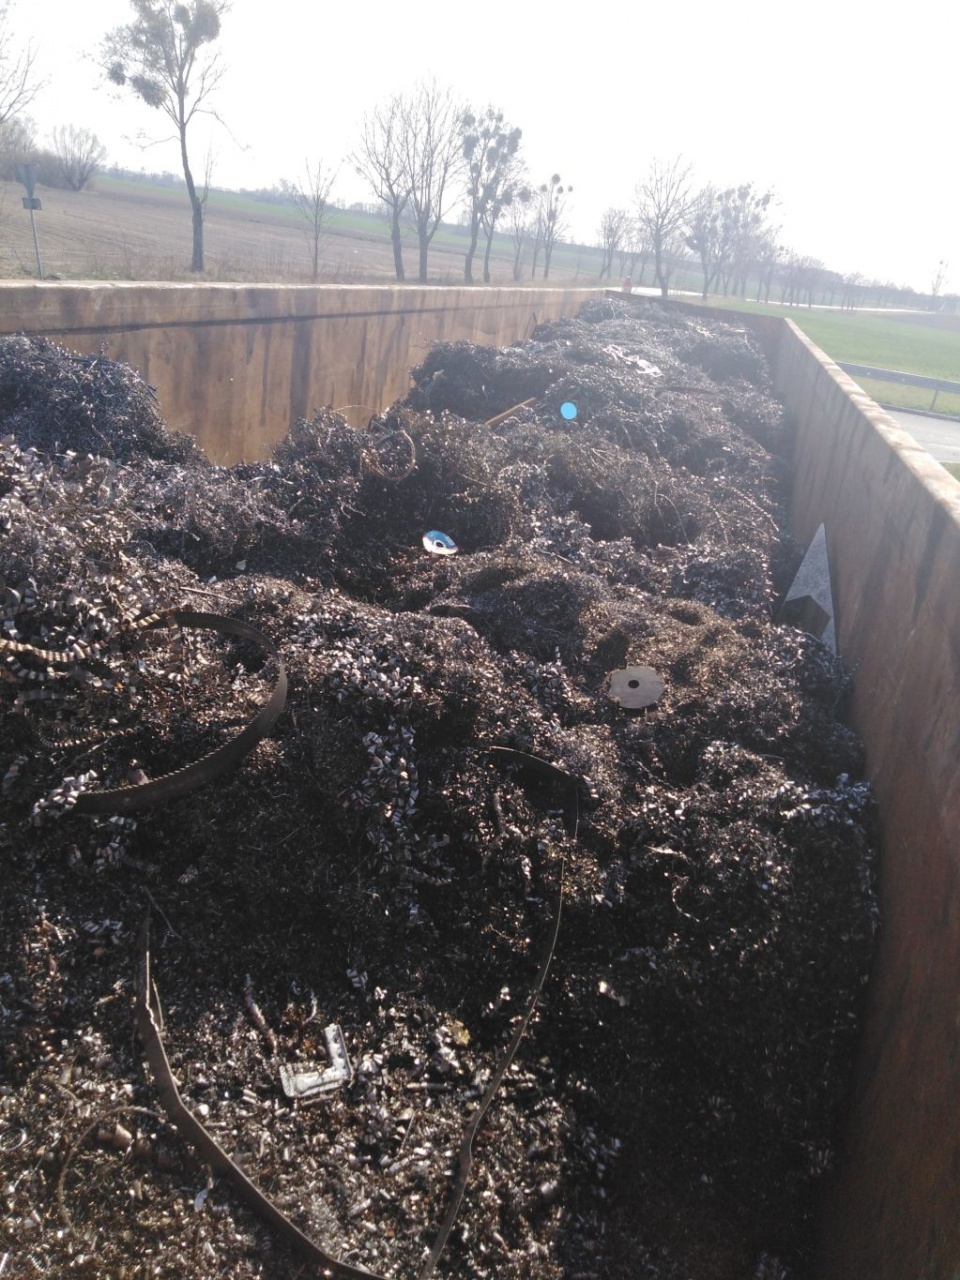 Transport odpadów zatrzymany w Gierszowicach [fot. WITD]